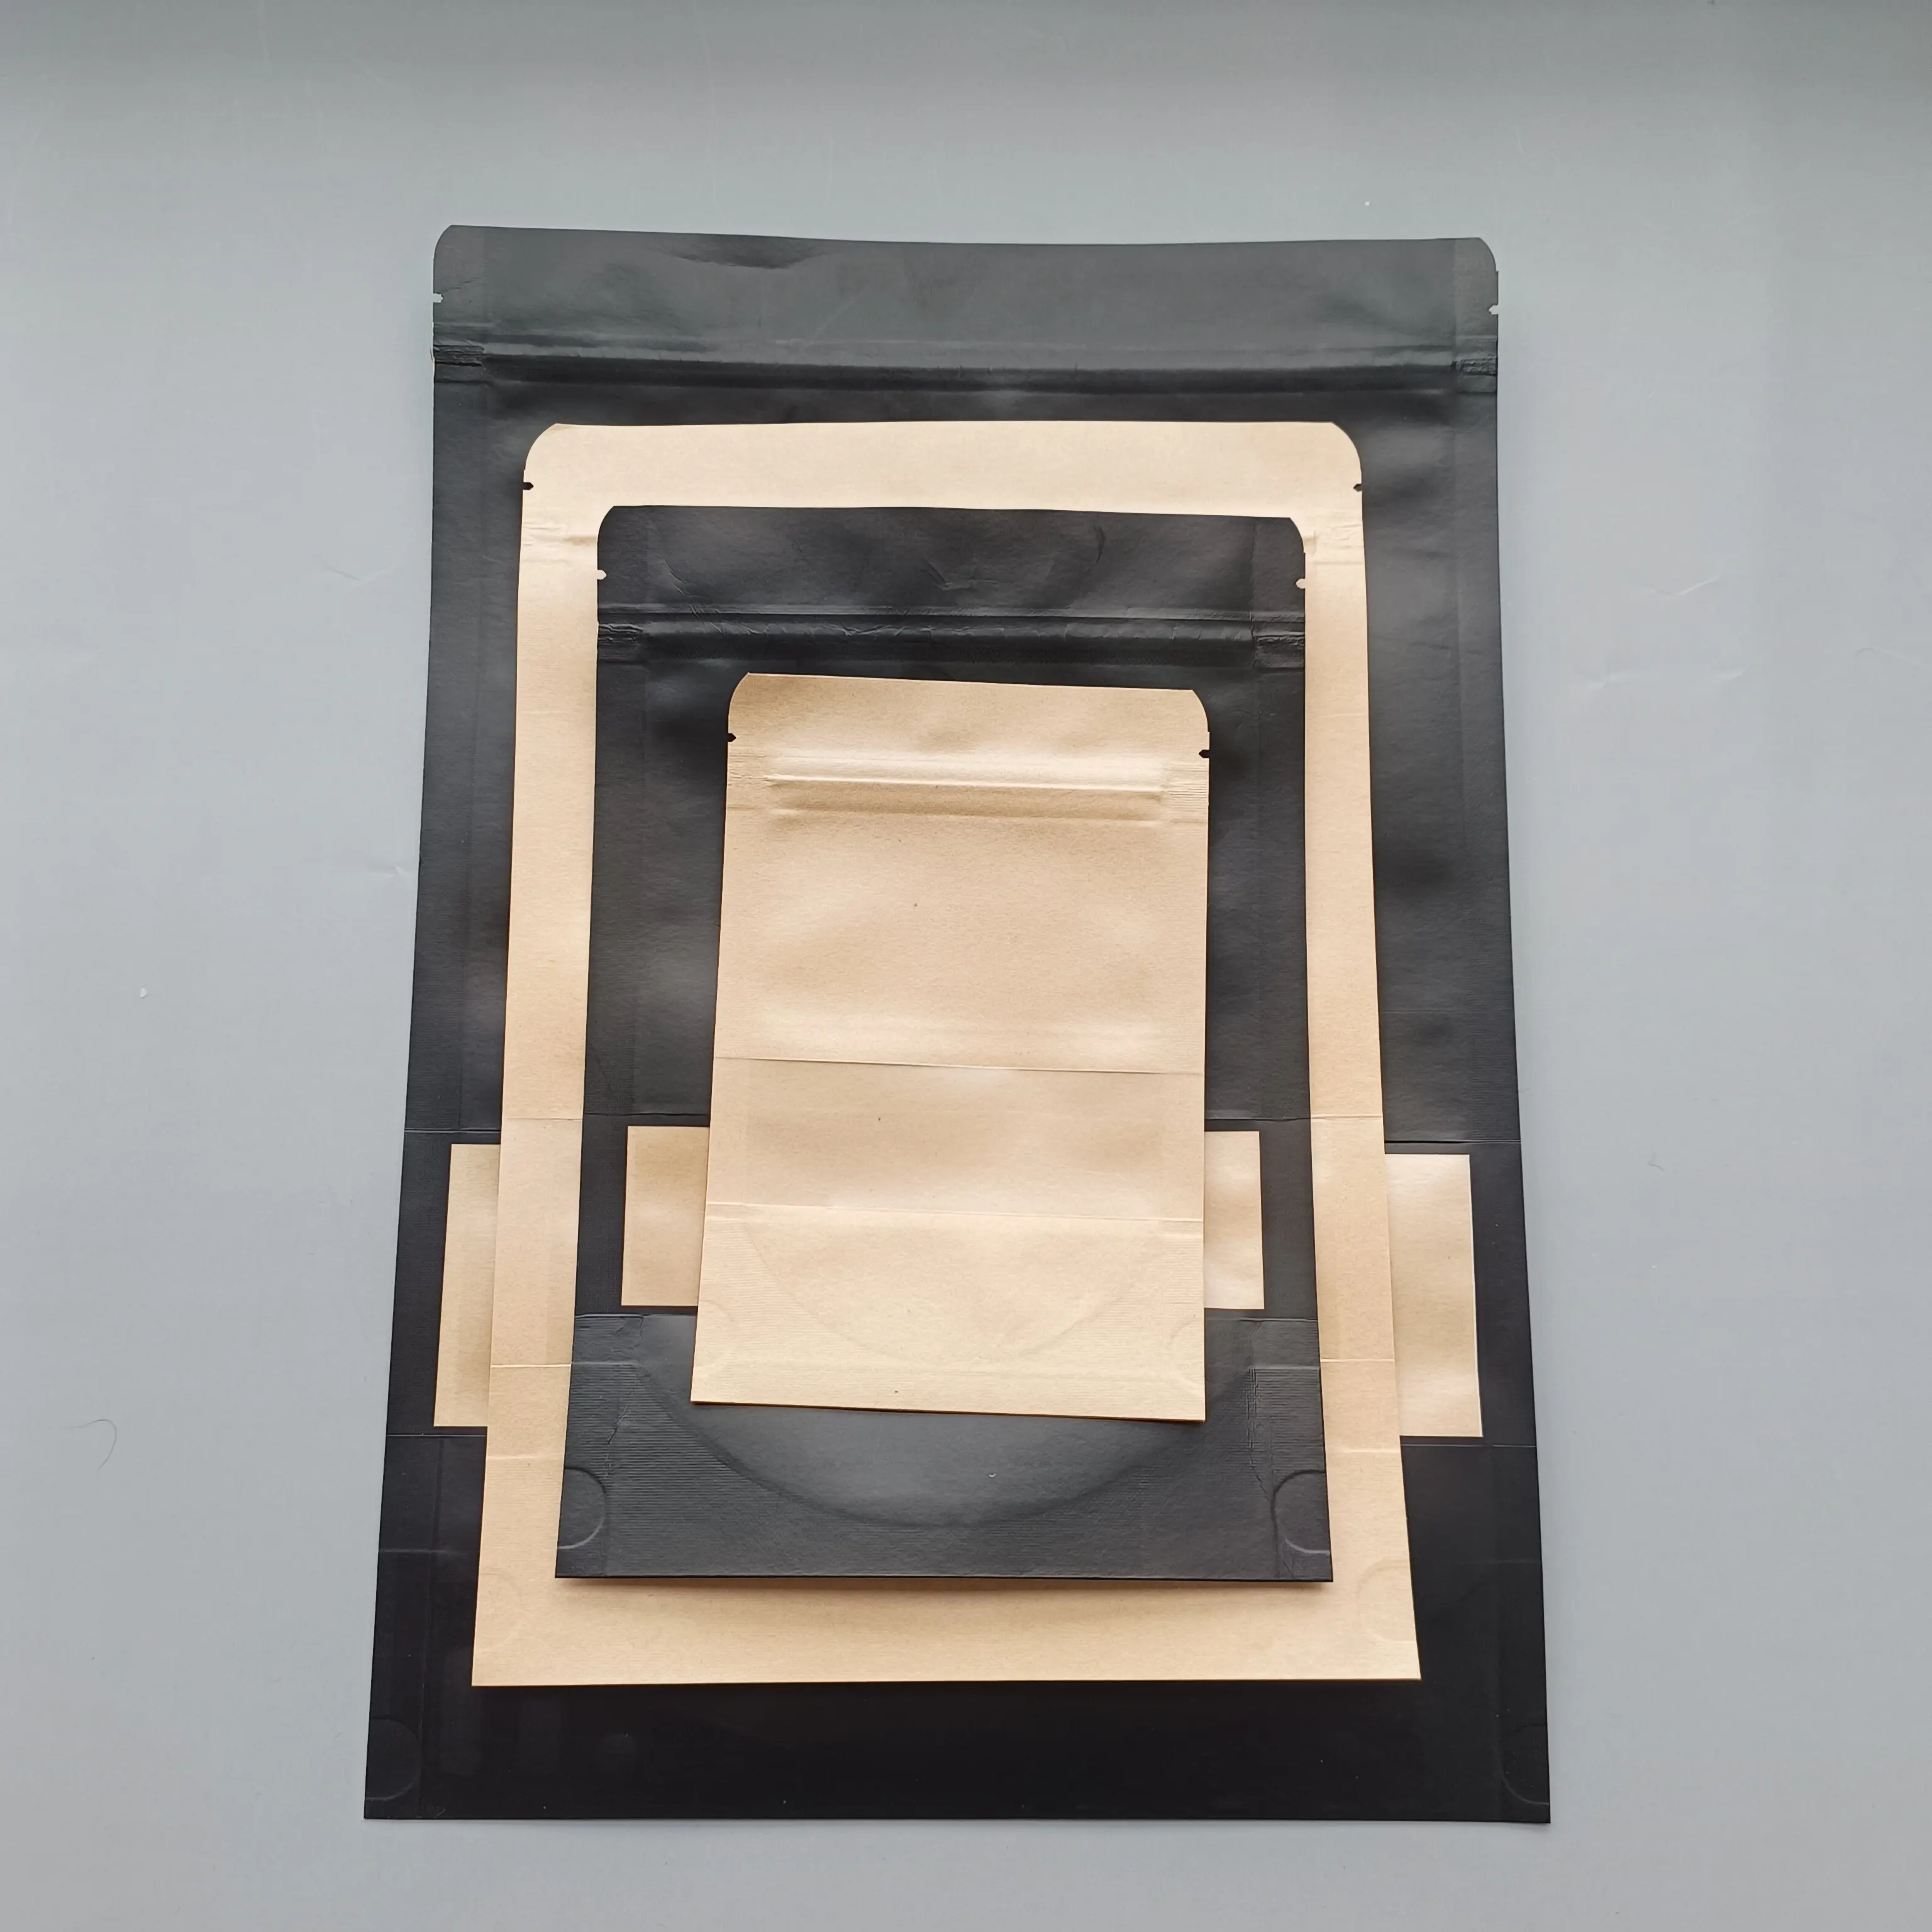 Переборная 3-х сторонняя плоская застежка-молния, коричневая крафт-бумага, подставка для мешков на заказ, коричневая крафт-бумажная сумка с окном